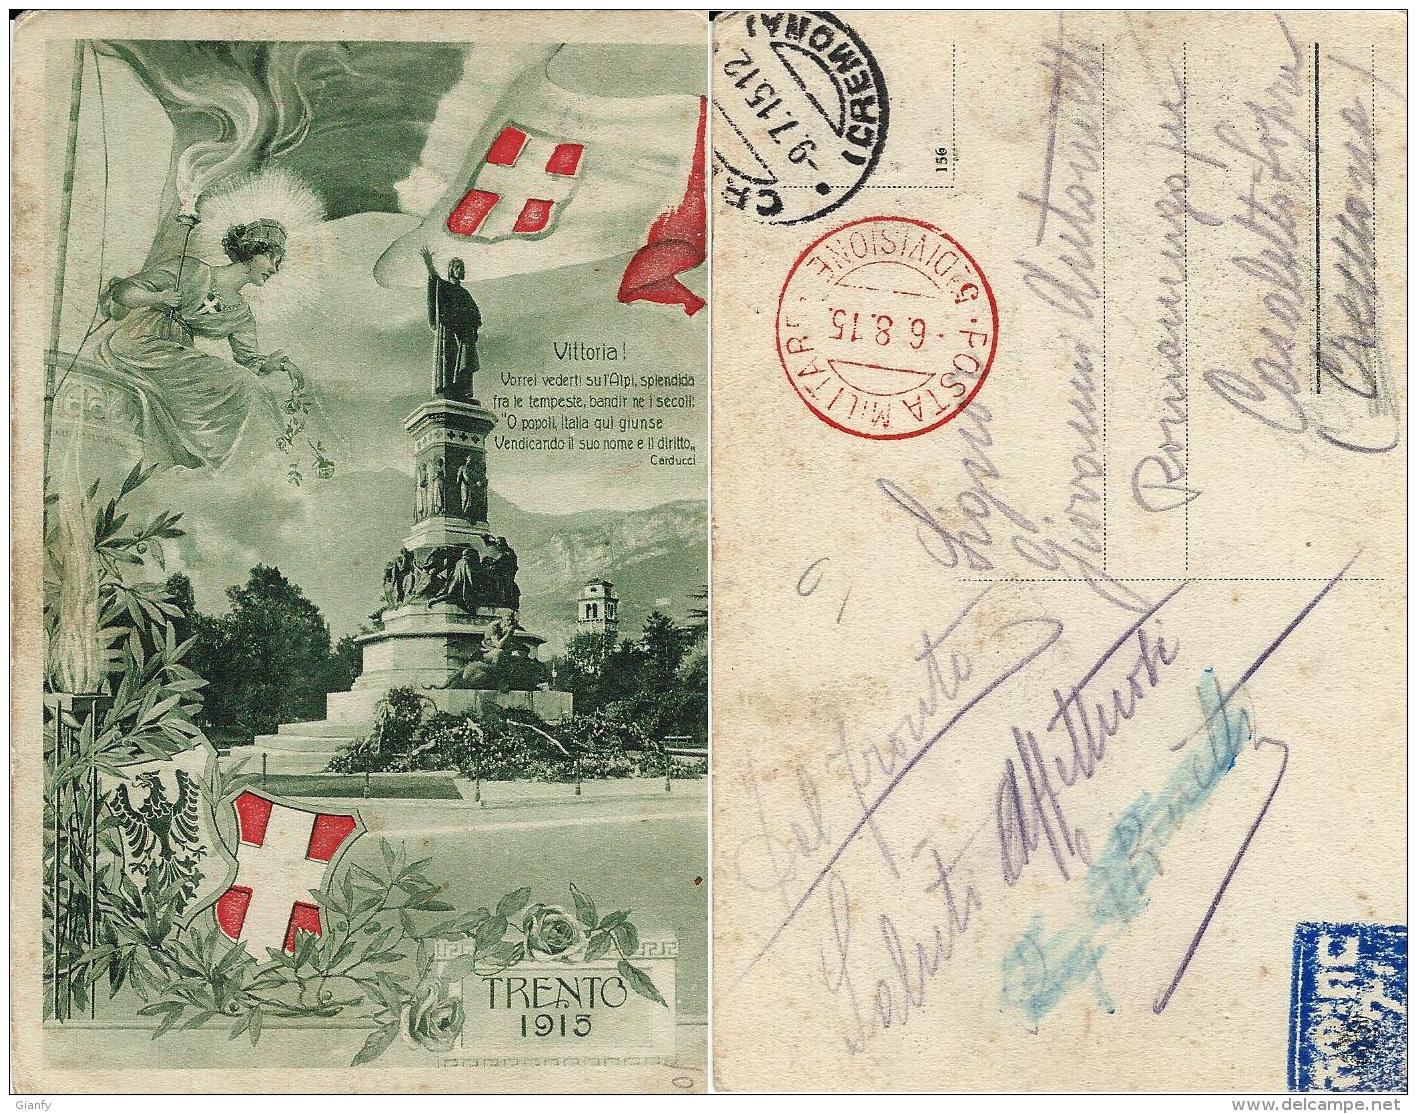 TRENTO PATRIOTTICA POSTA MILITARE 5a DIVISIONE 1915 EDOLO X CASALETTO SOPRA - Military Mail (PM)